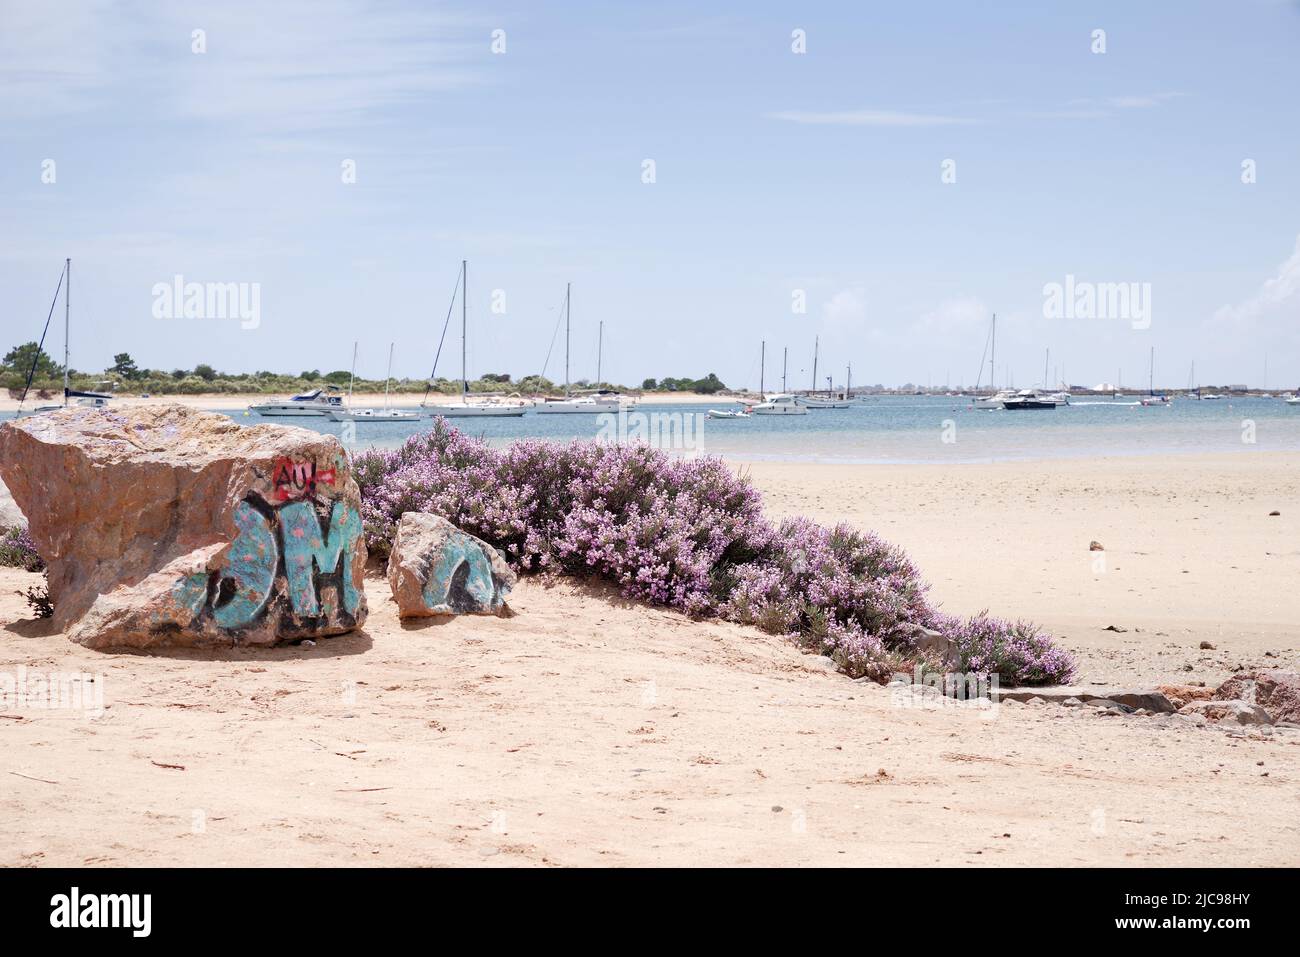 Praia dos Tesos, con su costa protegida y aguas poco profundas, es perfecta para disfrutar de una experiencia de playa fuera de las zonas turísticas: Tavira, Algarve, Portugal Foto de stock